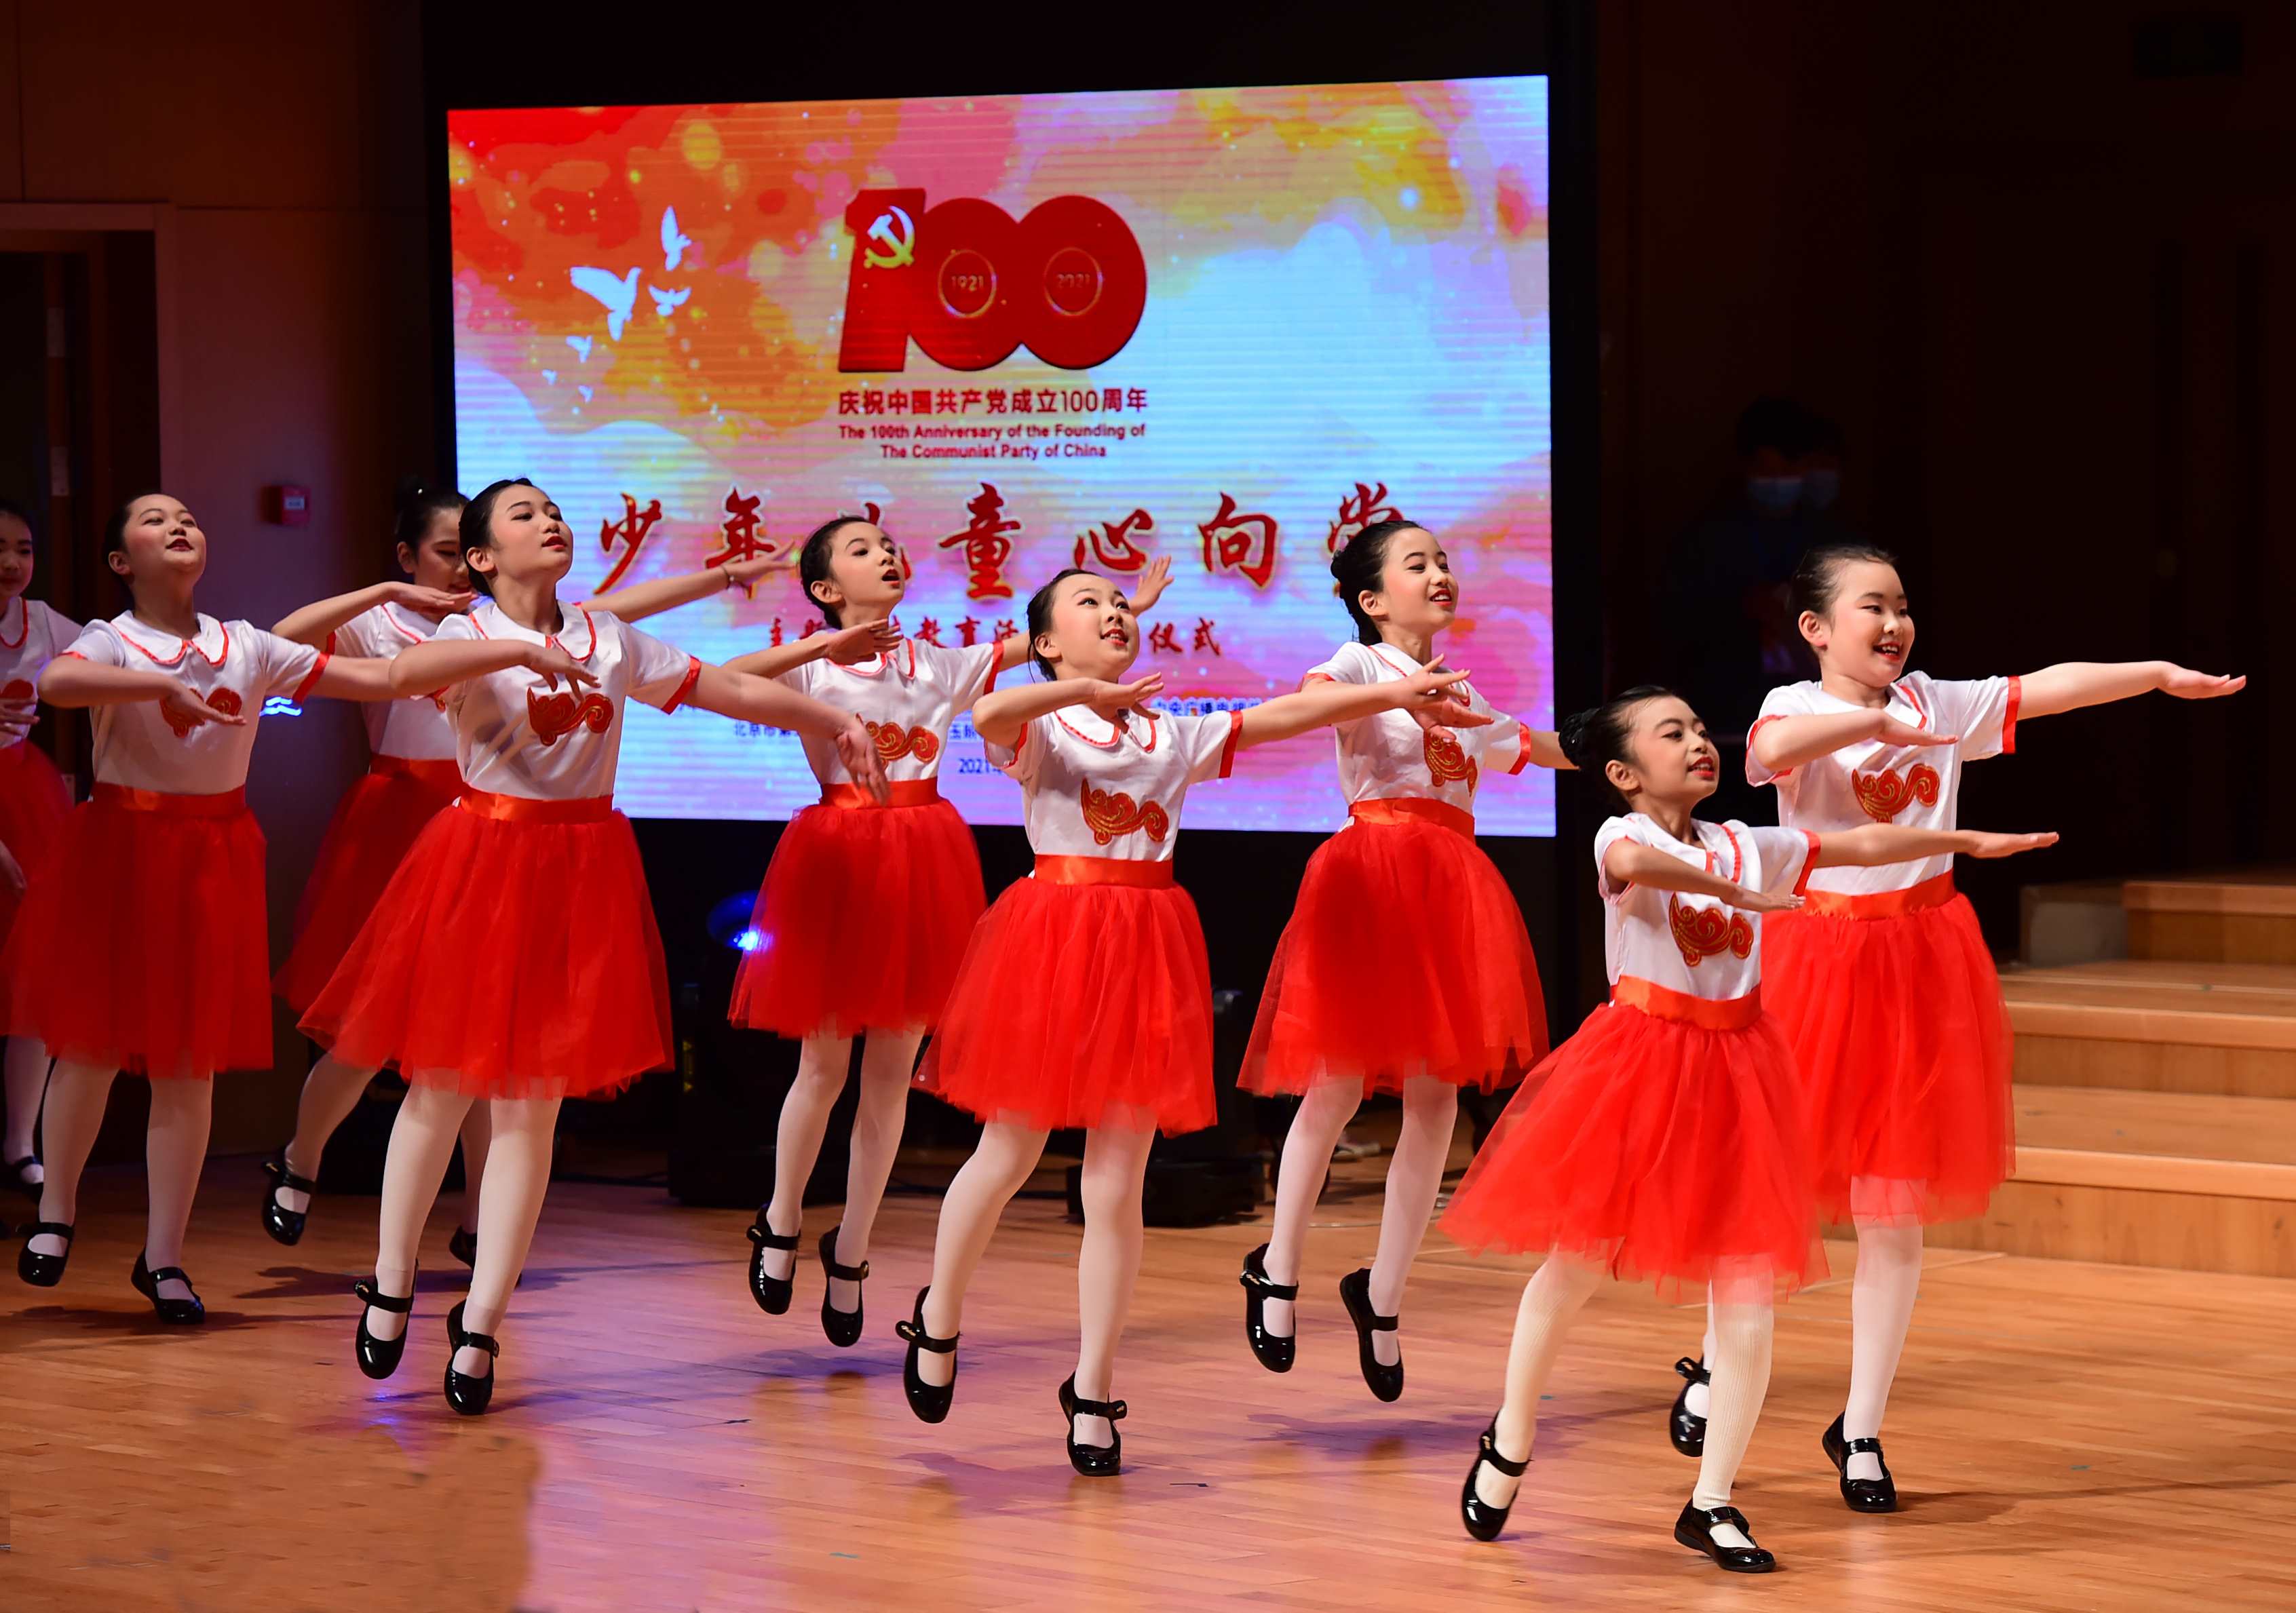 少年儿童心向党 庆祝建党100周年主题宣传教育活动在京启动